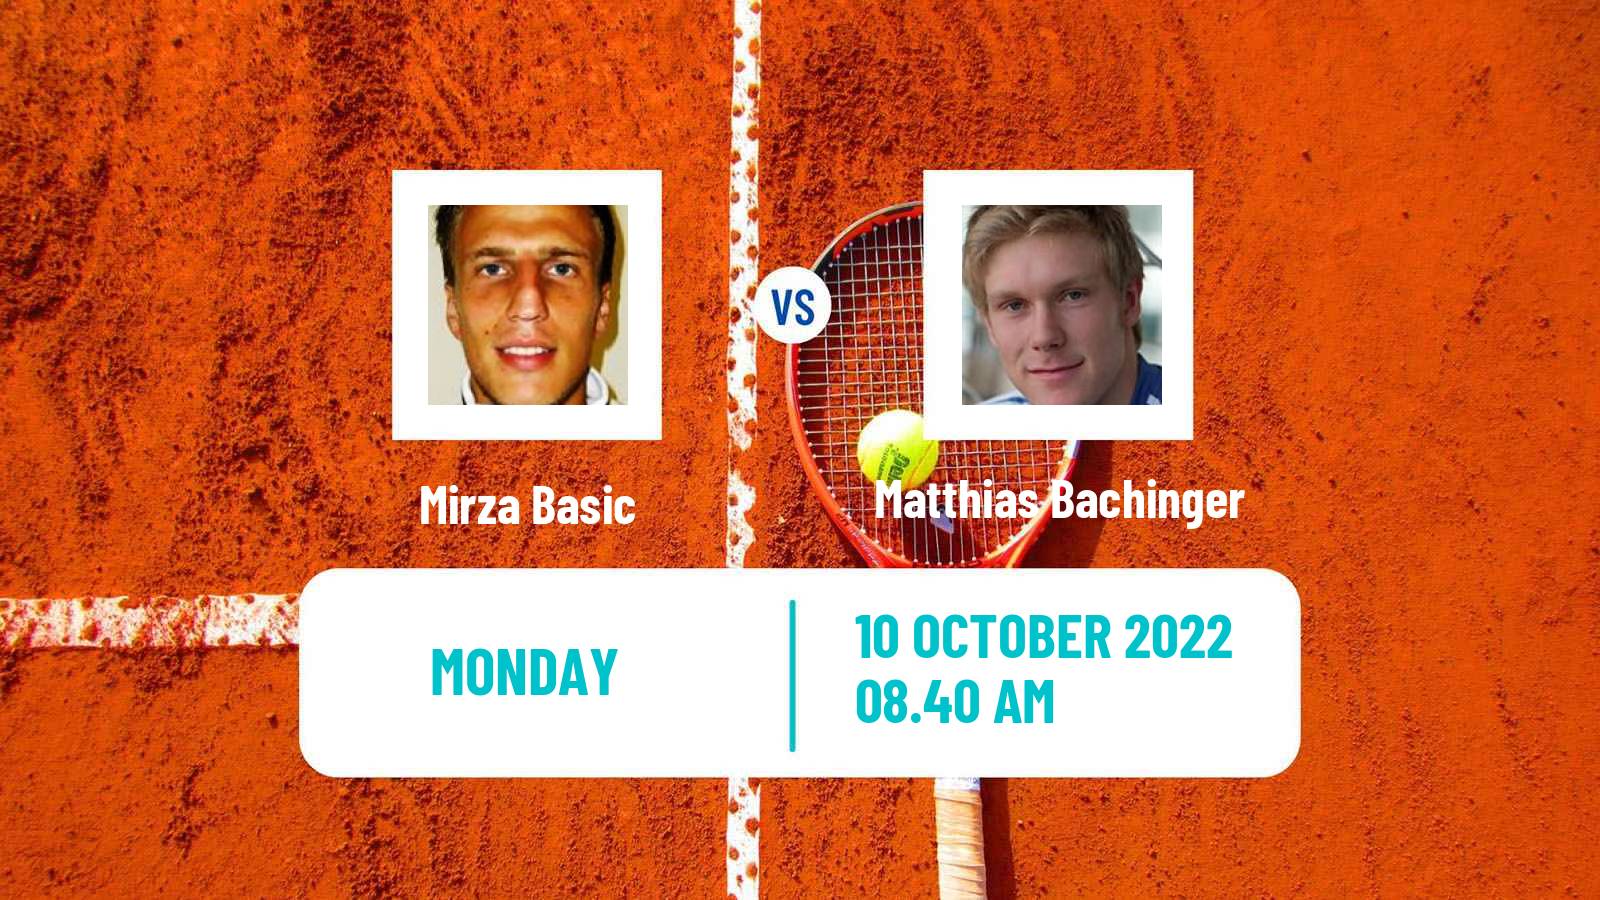 Tennis ATP Challenger Mirza Basic - Matthias Bachinger